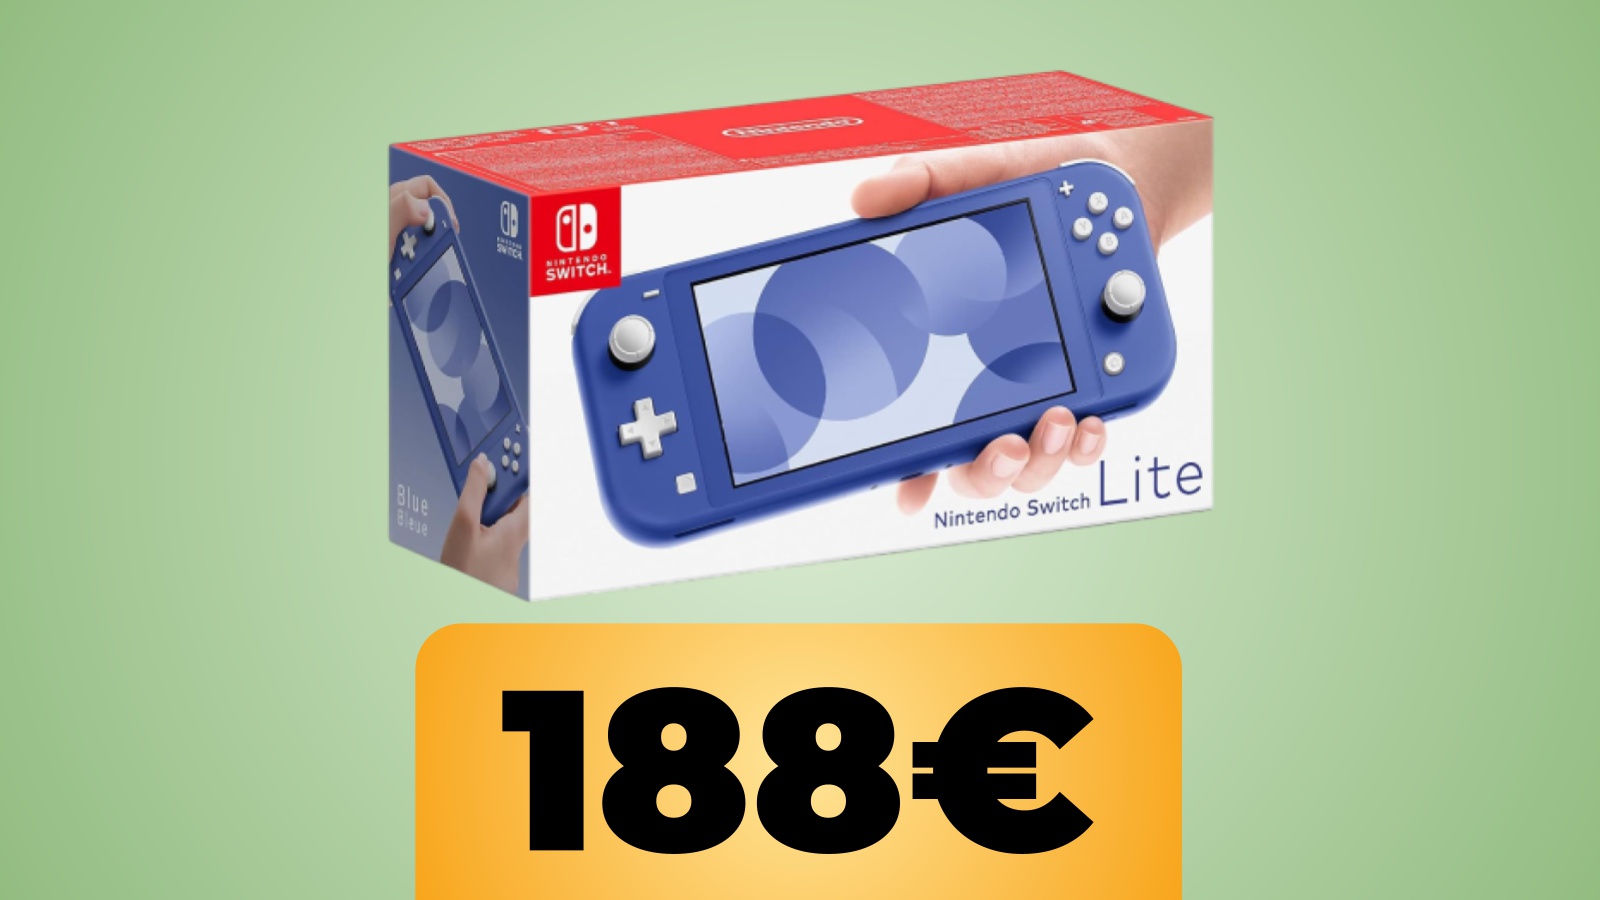 Nintendo Switch Lite blu e rosa sono in sconto su Amazon Italia al miglior prezzo